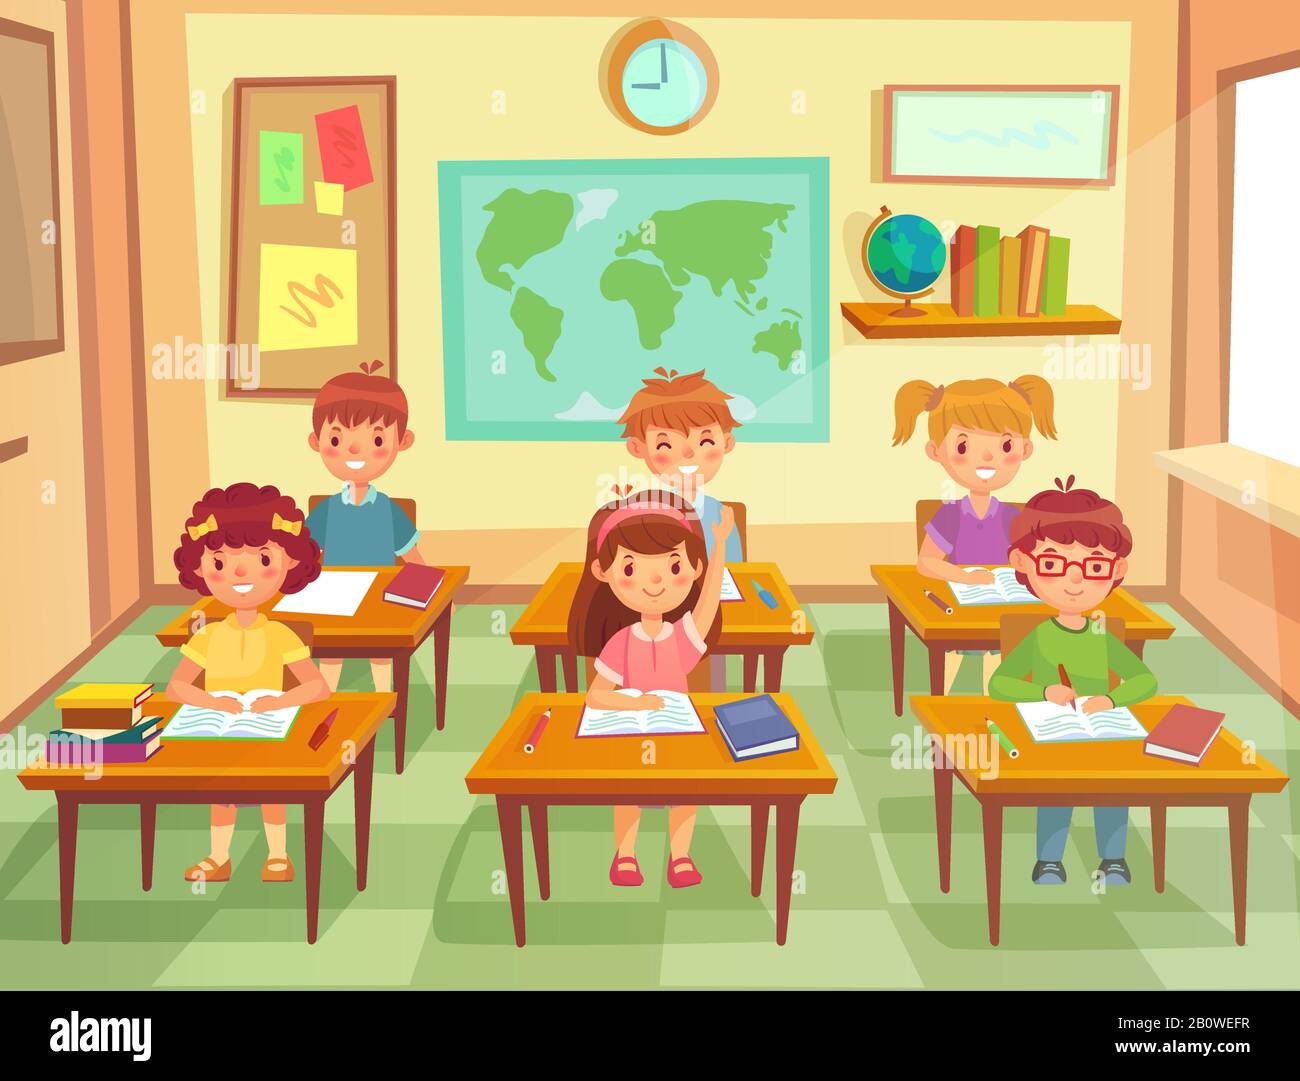 Schüler Kinder im Klassenzimmer. Grundschulkinder Schüler, lächelnde Jungen und Mädchen studieren in der Schulklasse Cartoon-Vektor-Illustration Stock Vektor